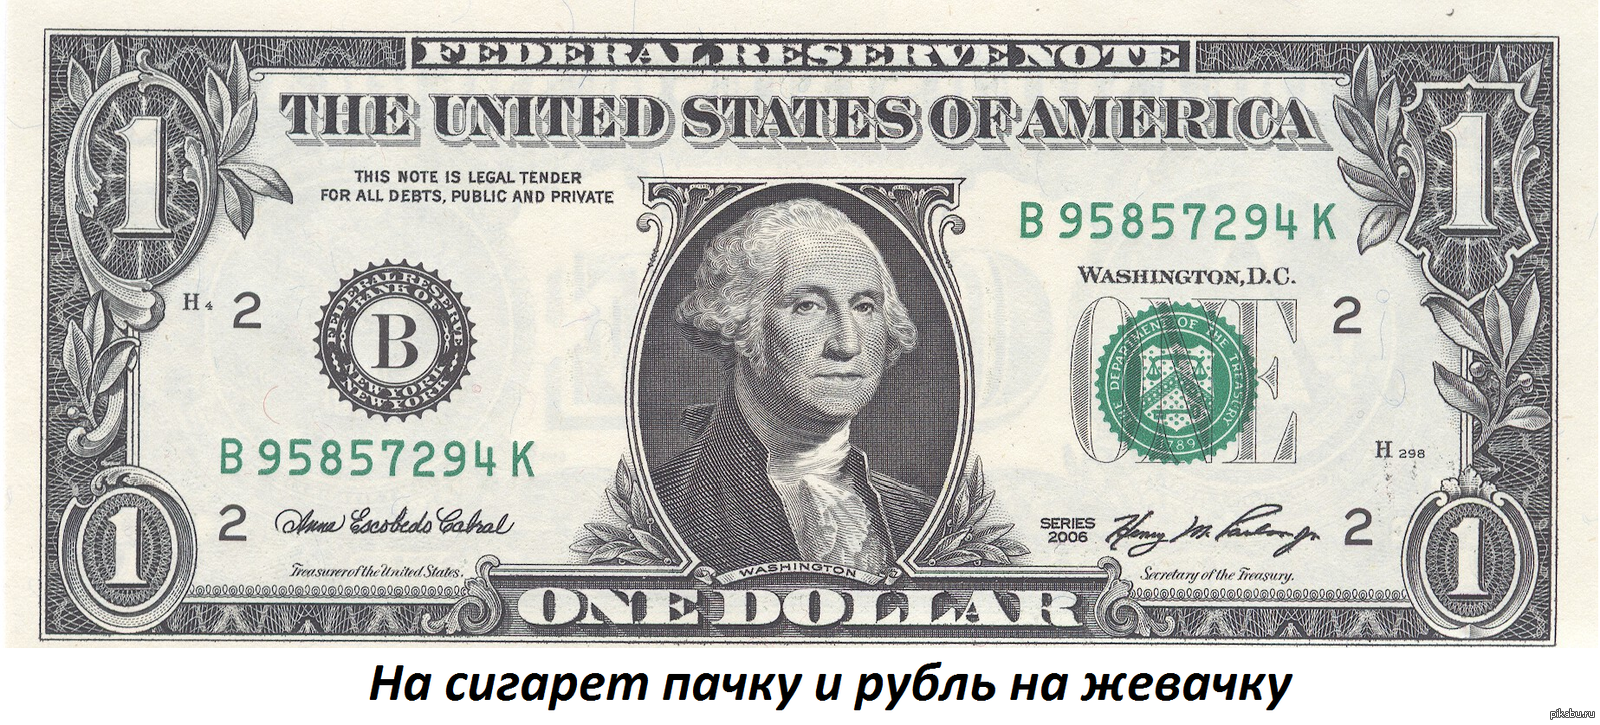 60 баксов в рублях. Однодолларовая купюра Джордж Вашингтон. Джордж Вашингтон на купюре. 1 Доллар США. Купюра 50 долларов США.